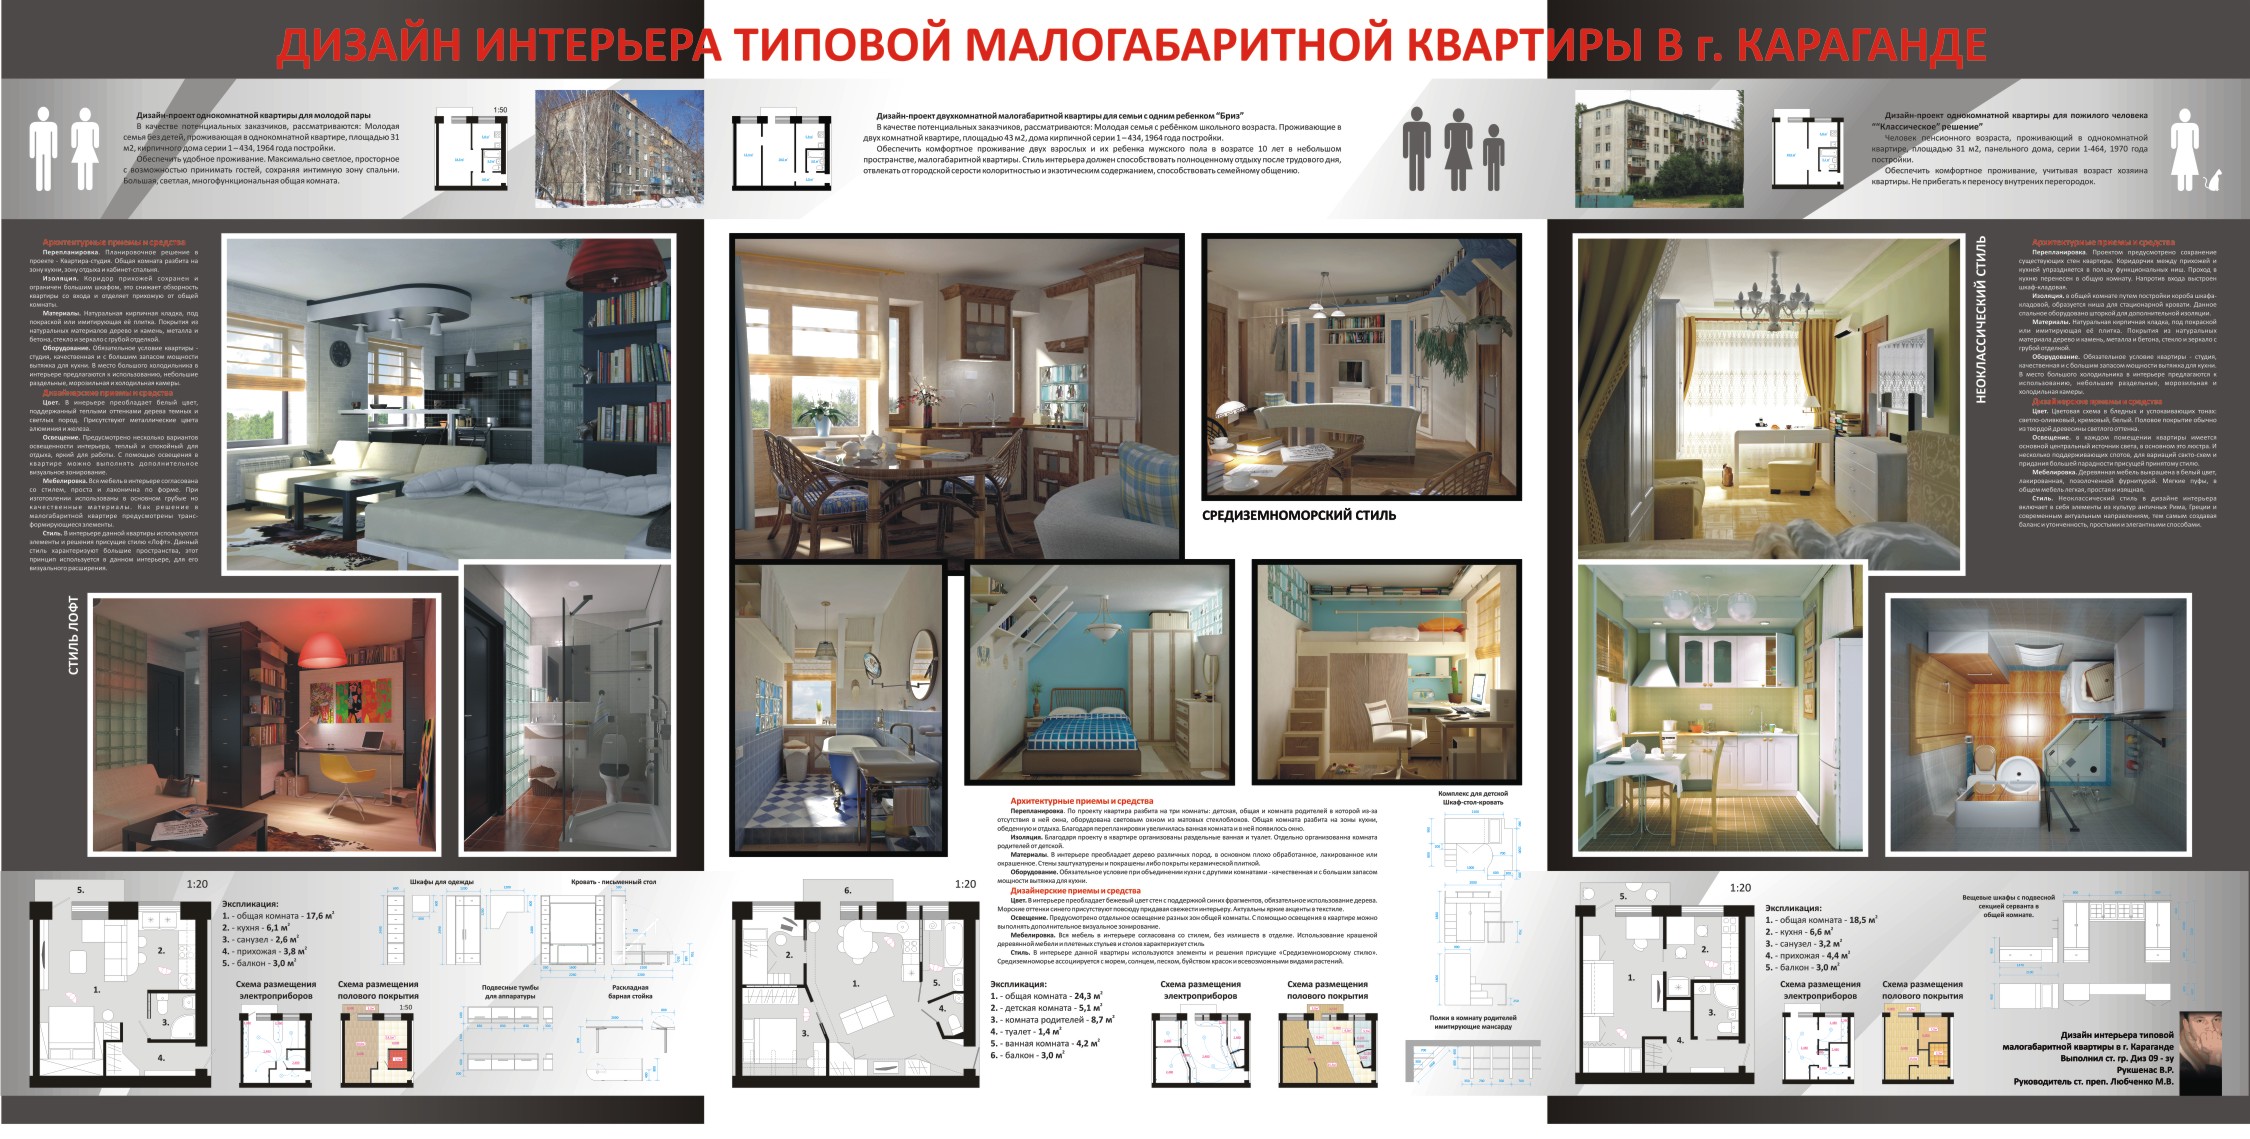 Дизайн интерьера типовой малогабаритной квартиры в г. Караганде -